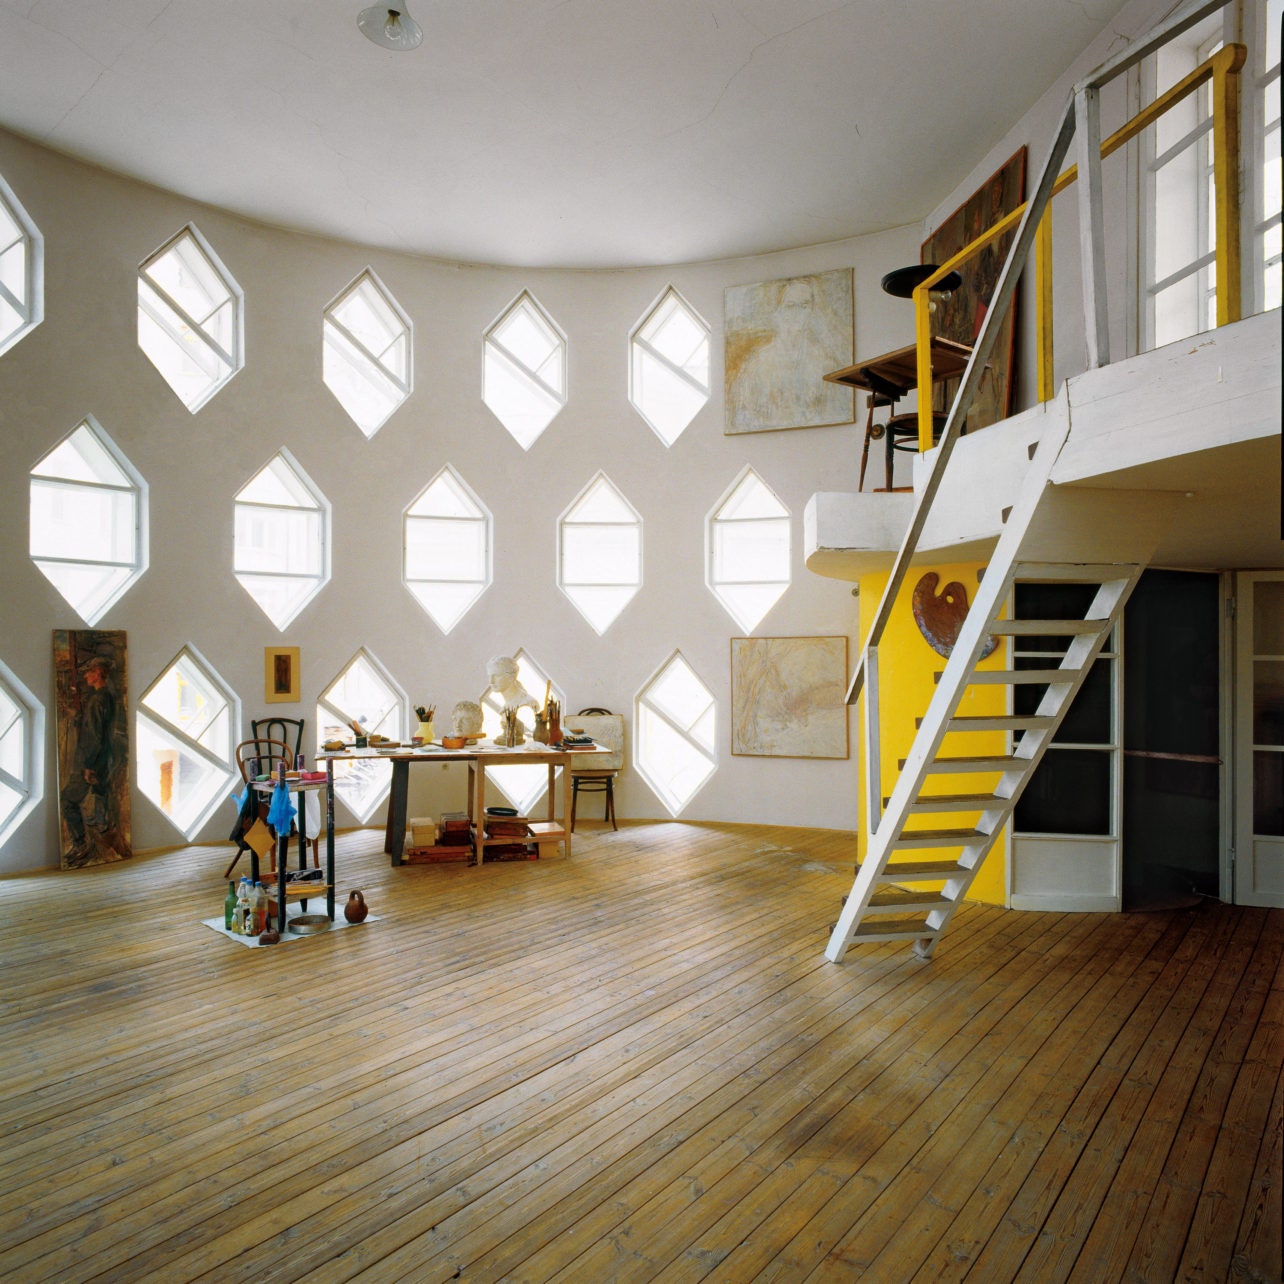 Главное помещение дома — мастерская Константина Мельникова с тремя рядами шестигранных окон. Лестница ведет на антресоль...